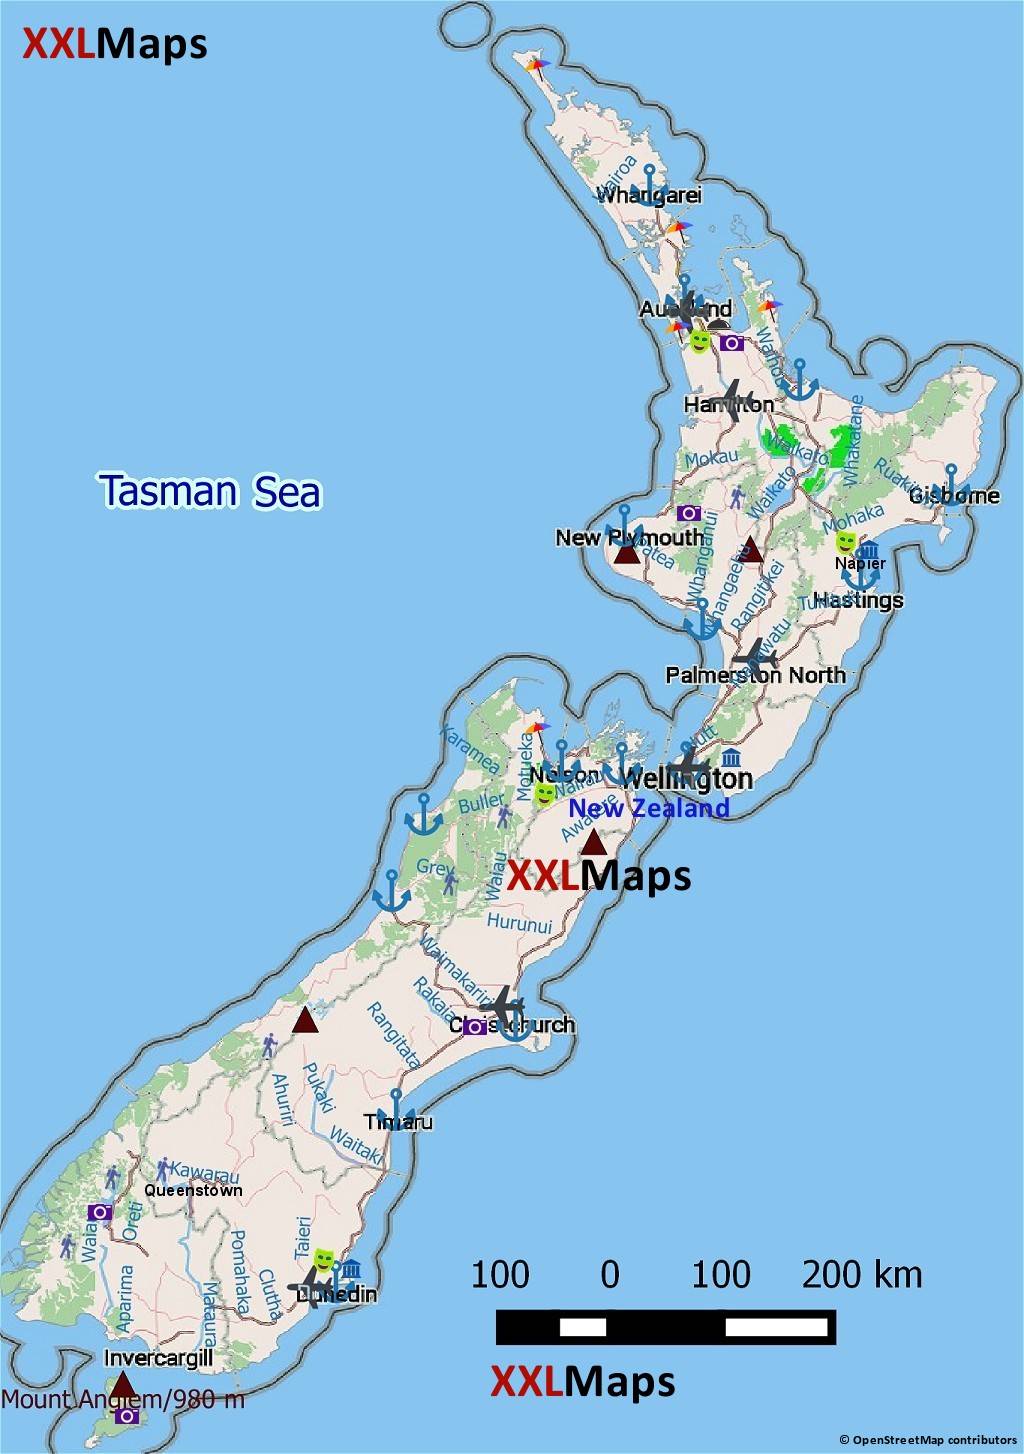 Mappa turistica di Nuova Zelanda